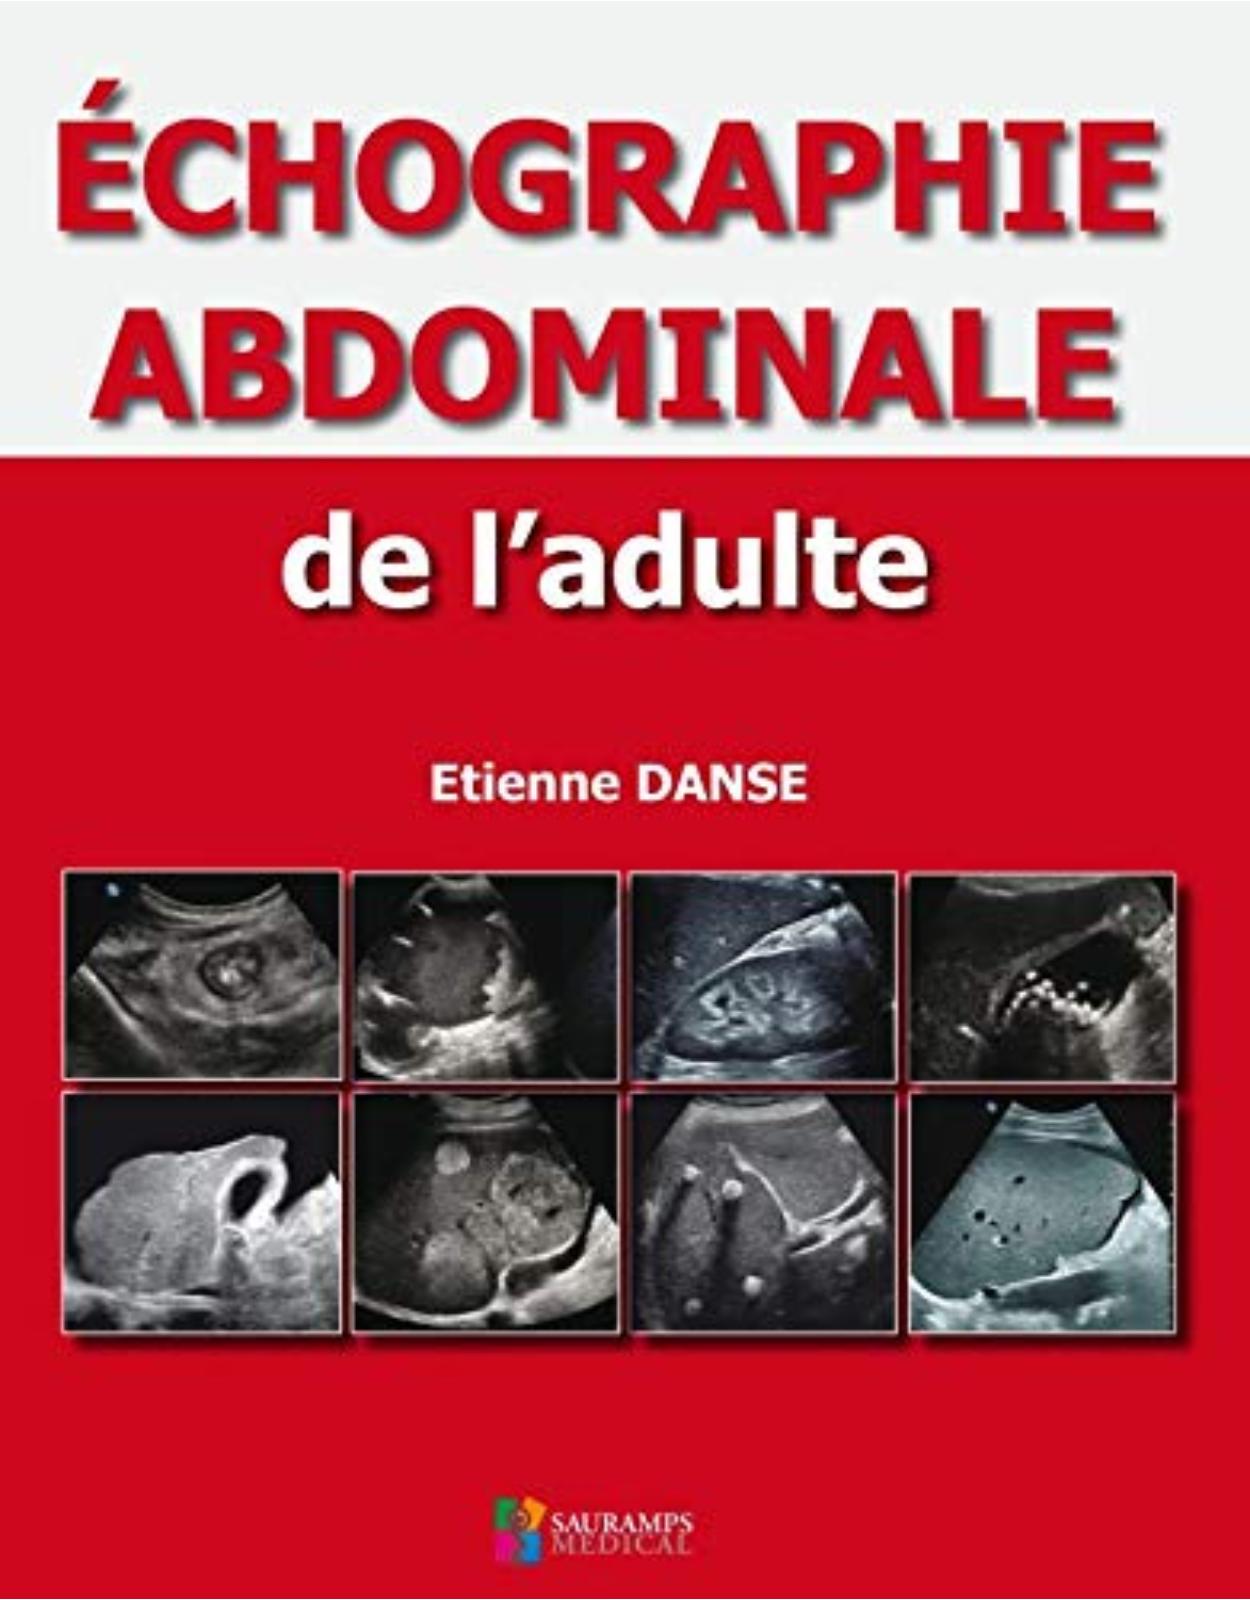 ECHOGRAPHIE ABDOMINALE DE L'ADULTE